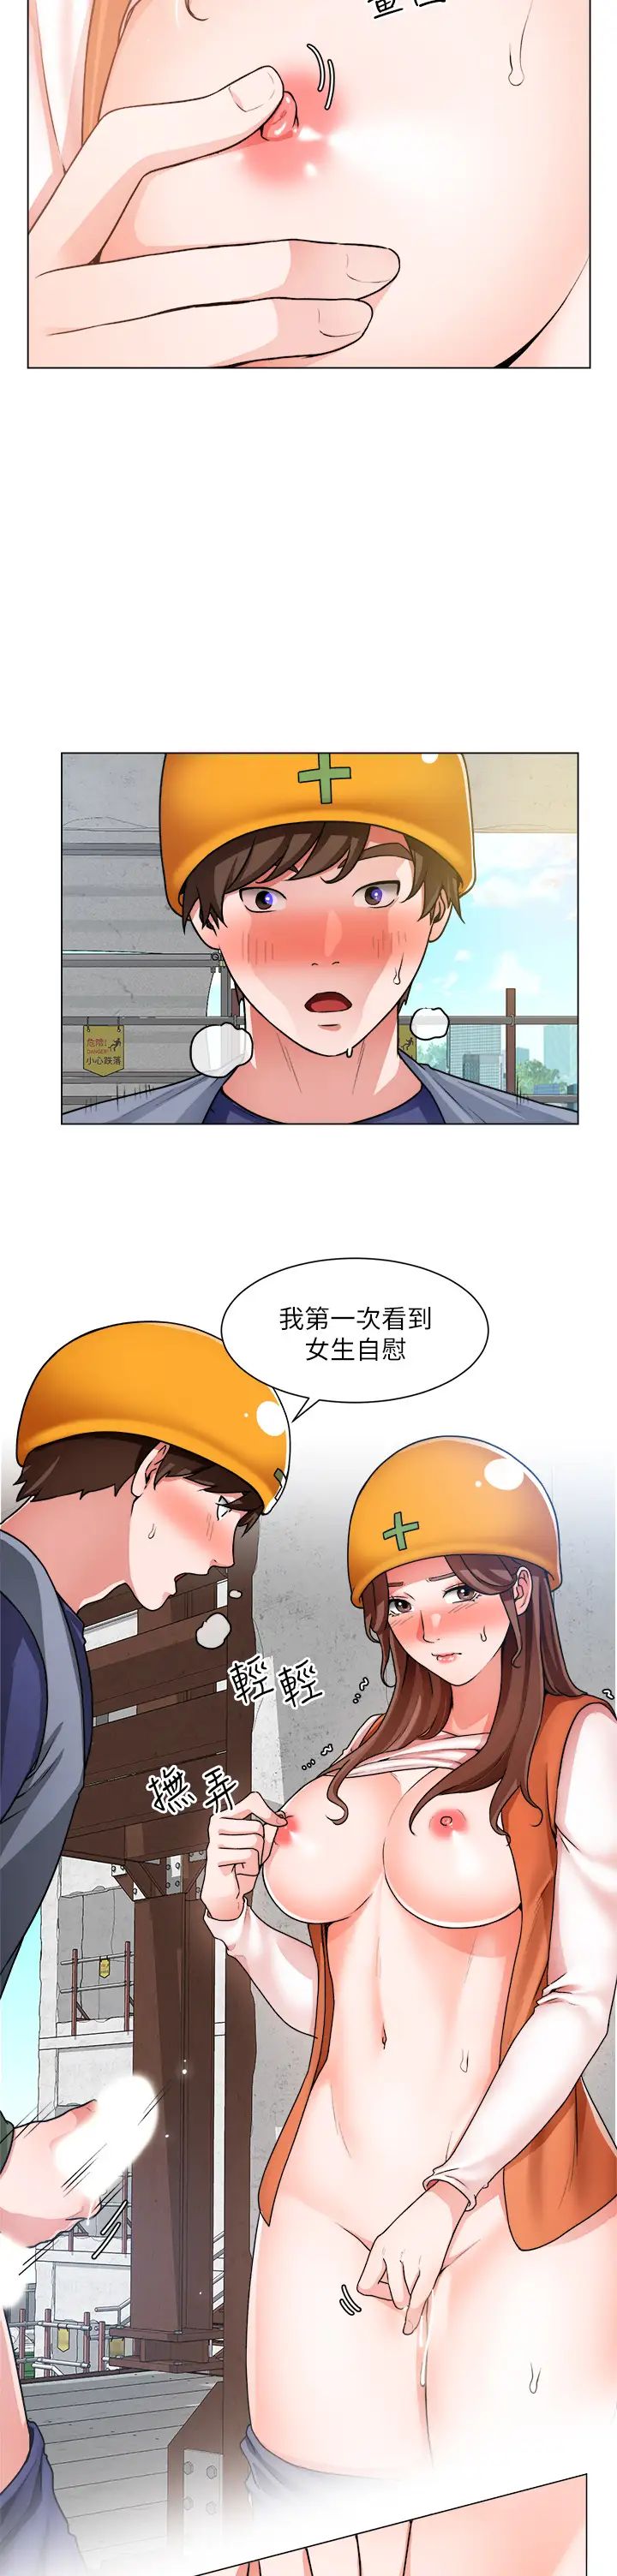 韩国污漫画 調陰妙手 第20话 11